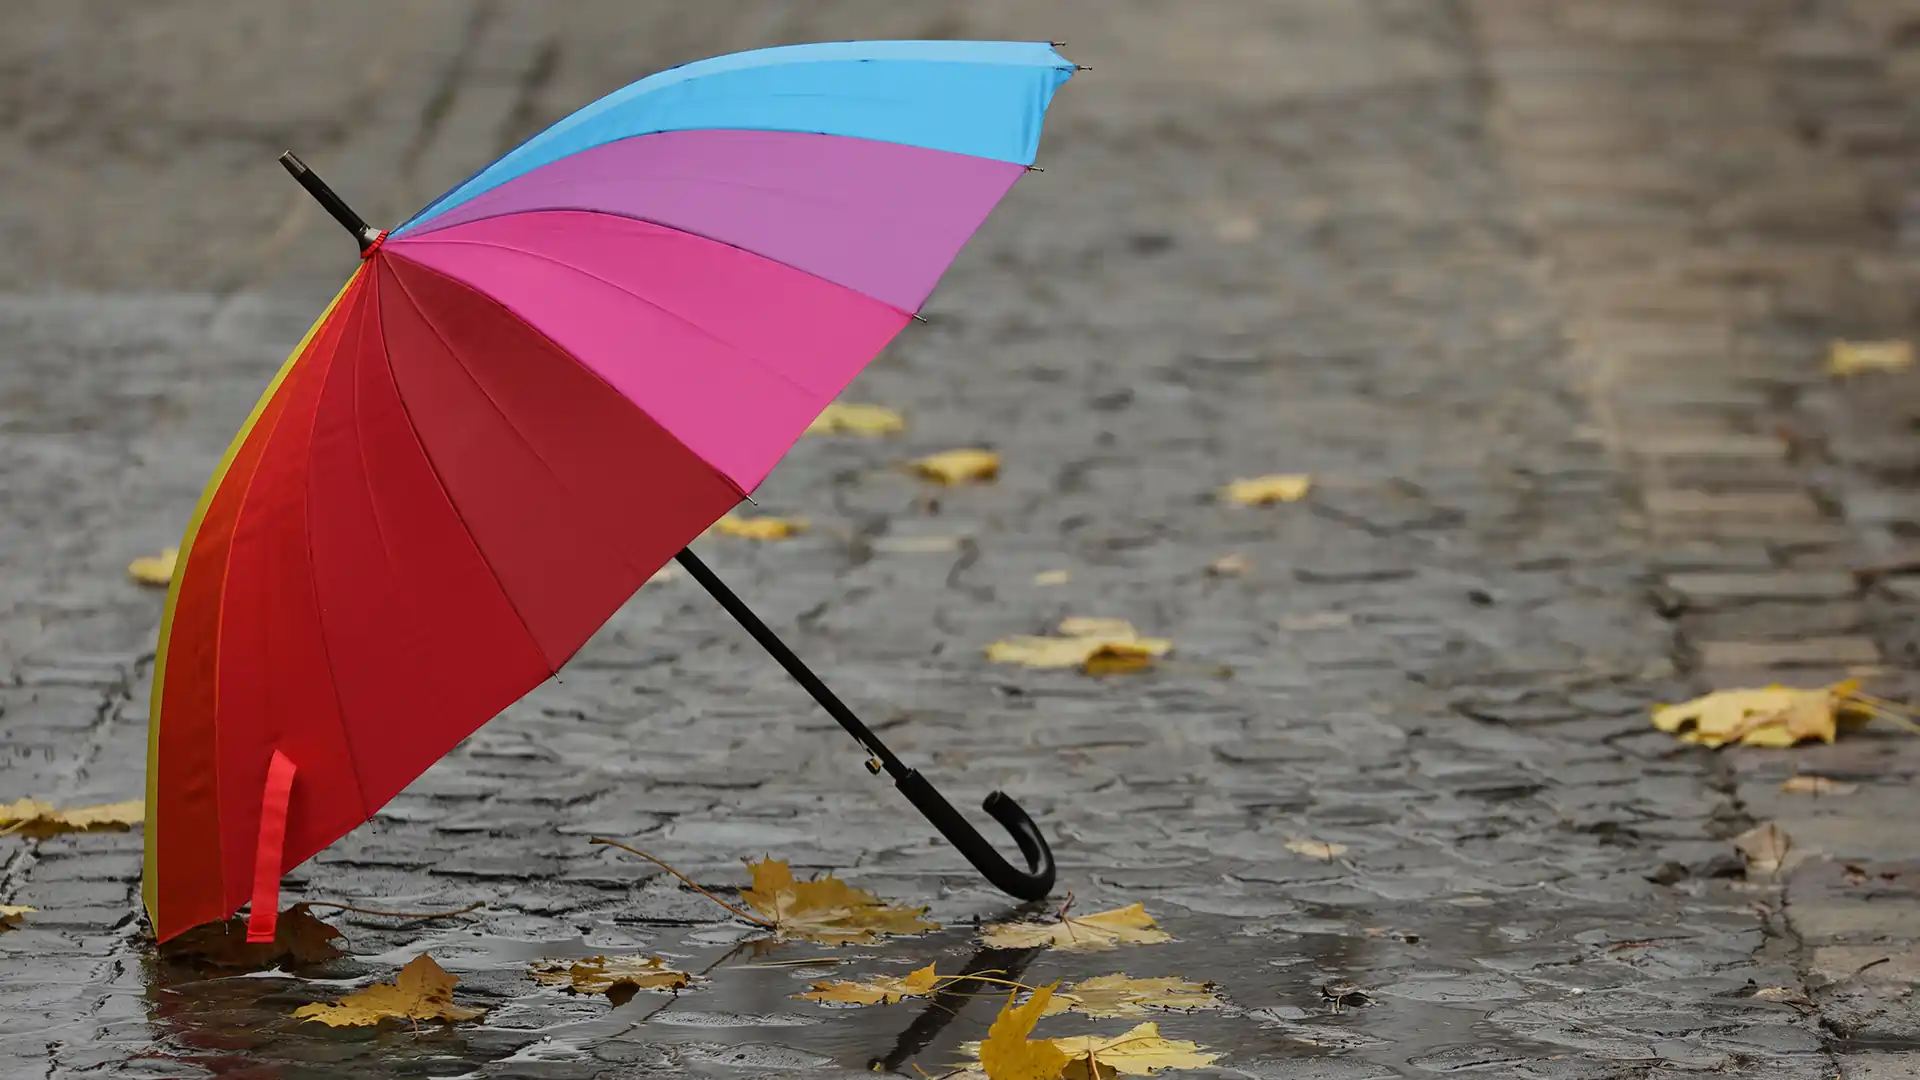 Umbrella in bad weather.